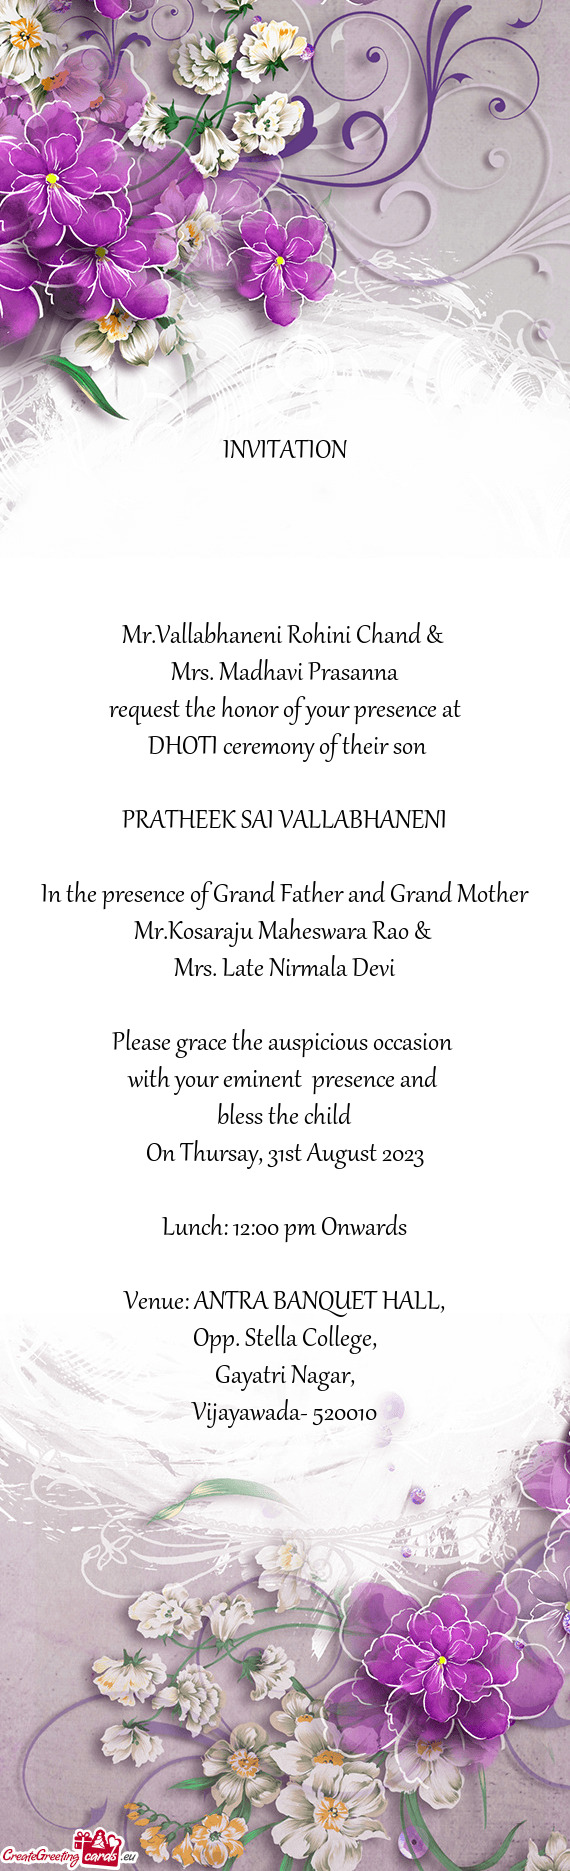 Mrs. Madhavi Prasanna